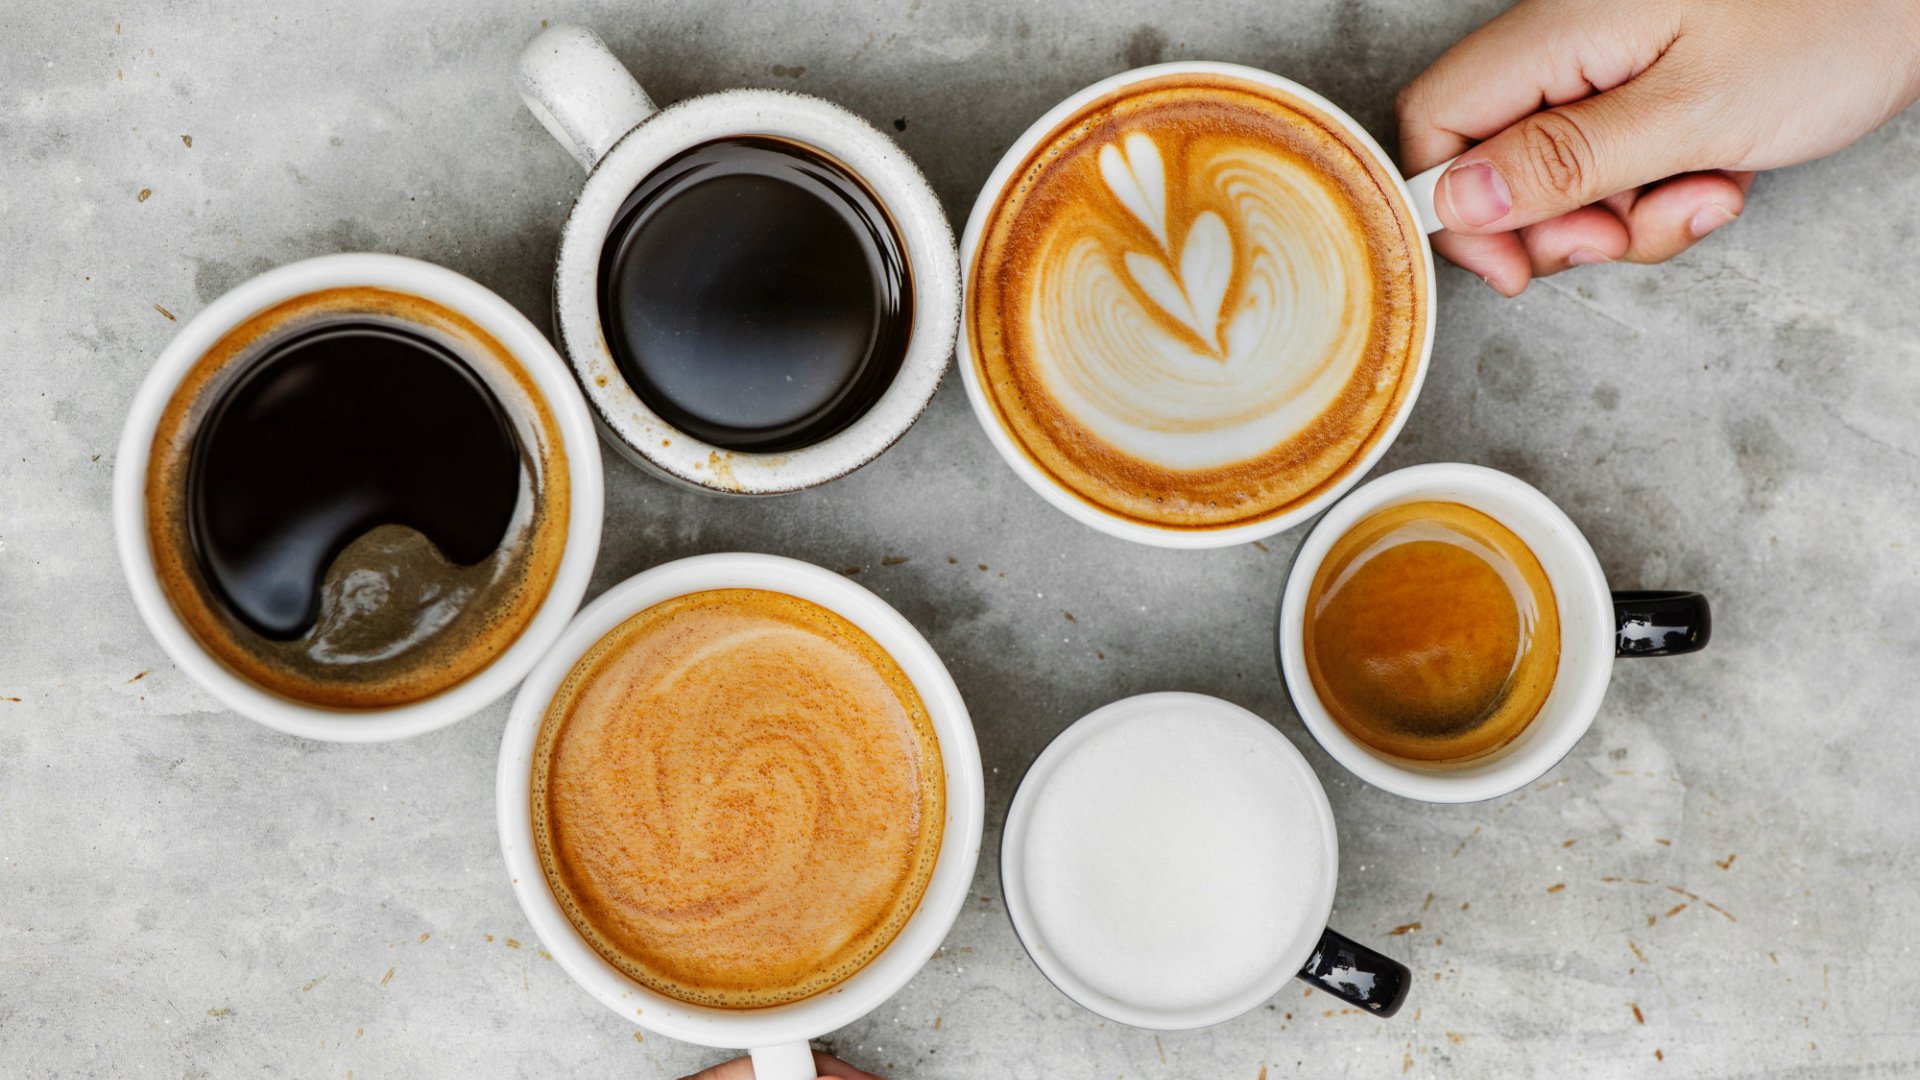 Foto de capa do artigo "Café faz mal? Efeito do descafeinado, requentado ou com leite"